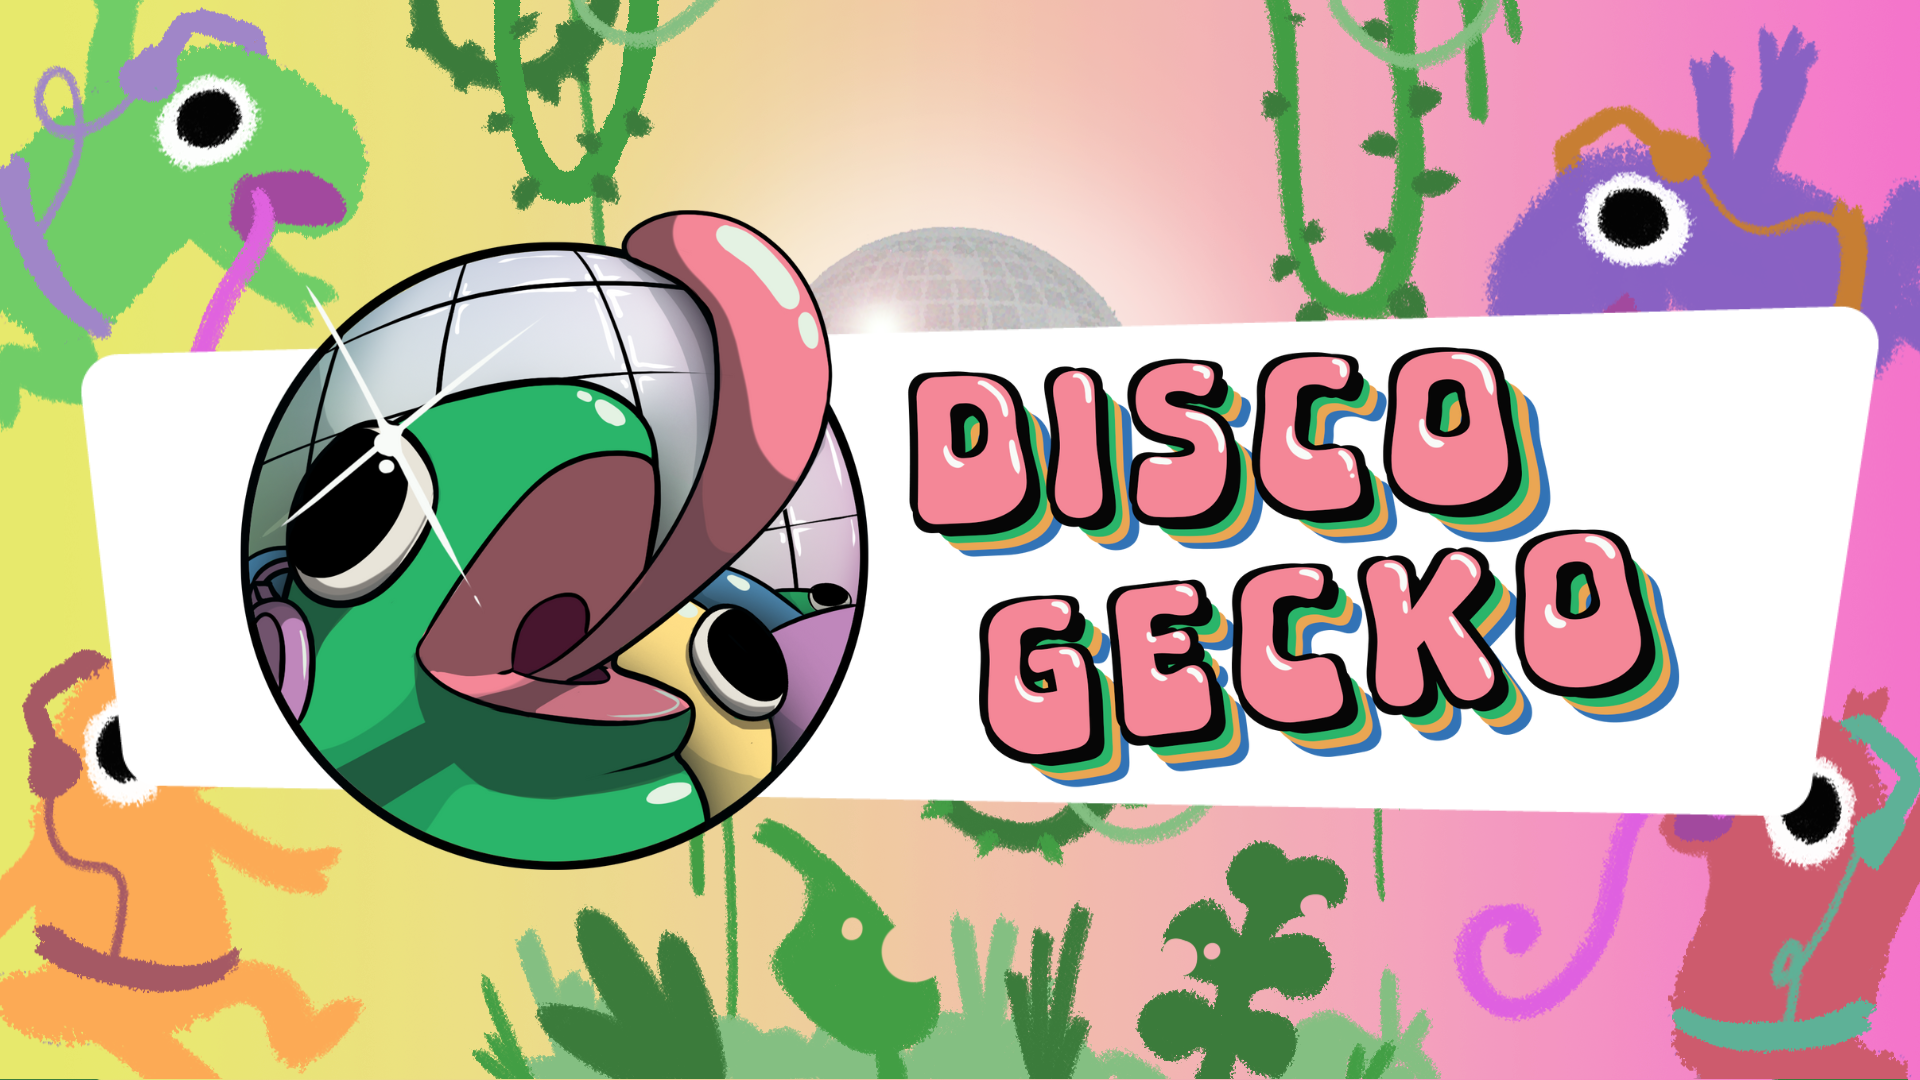 Disco Gecko